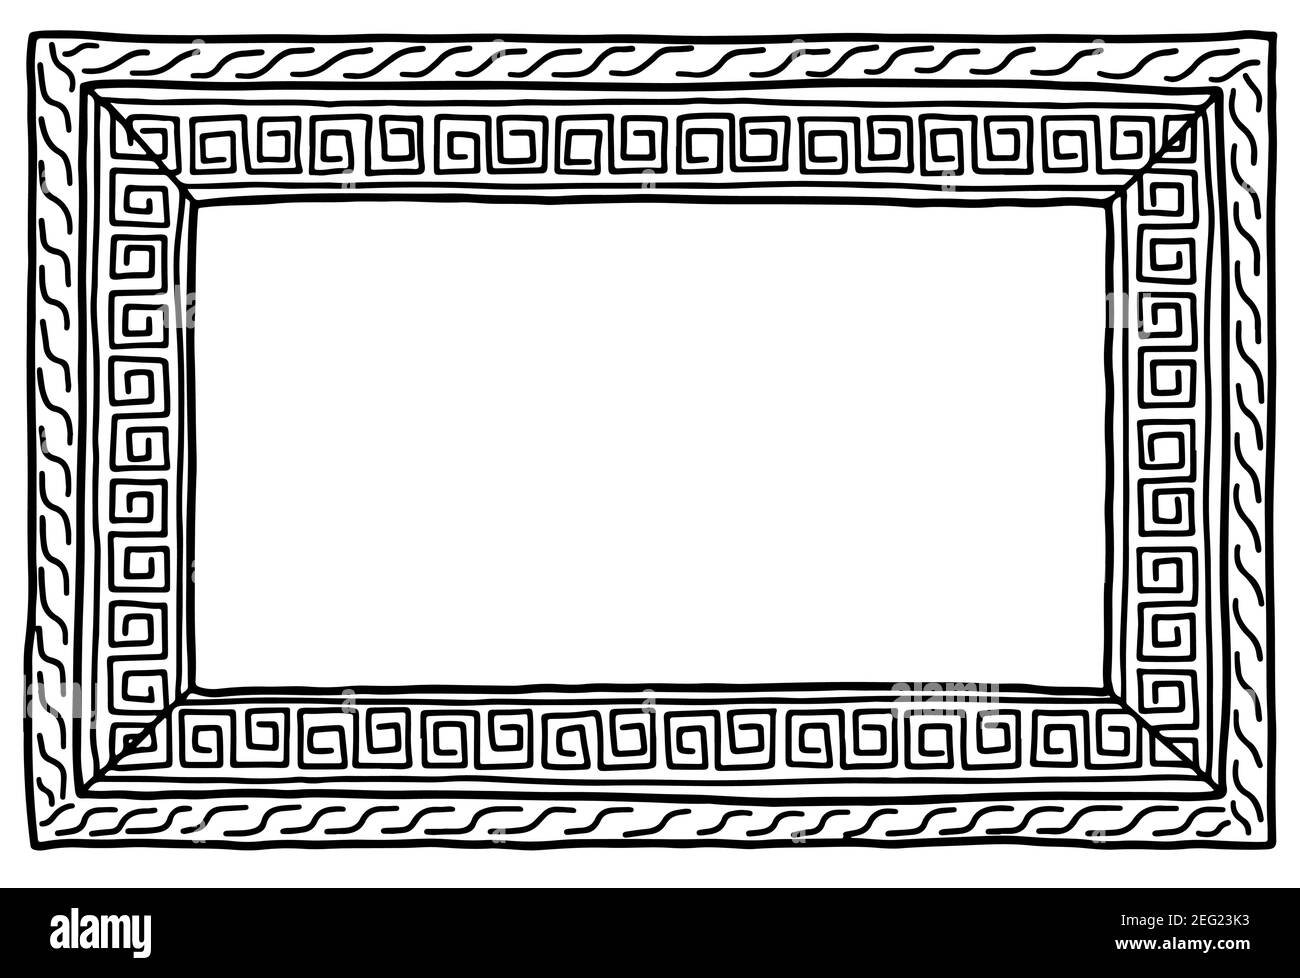 Bilderrahmen handgezeichnetes griechisches Ornament mäander mit Kopierraum doodle Vektorgrafik Stock Vektor